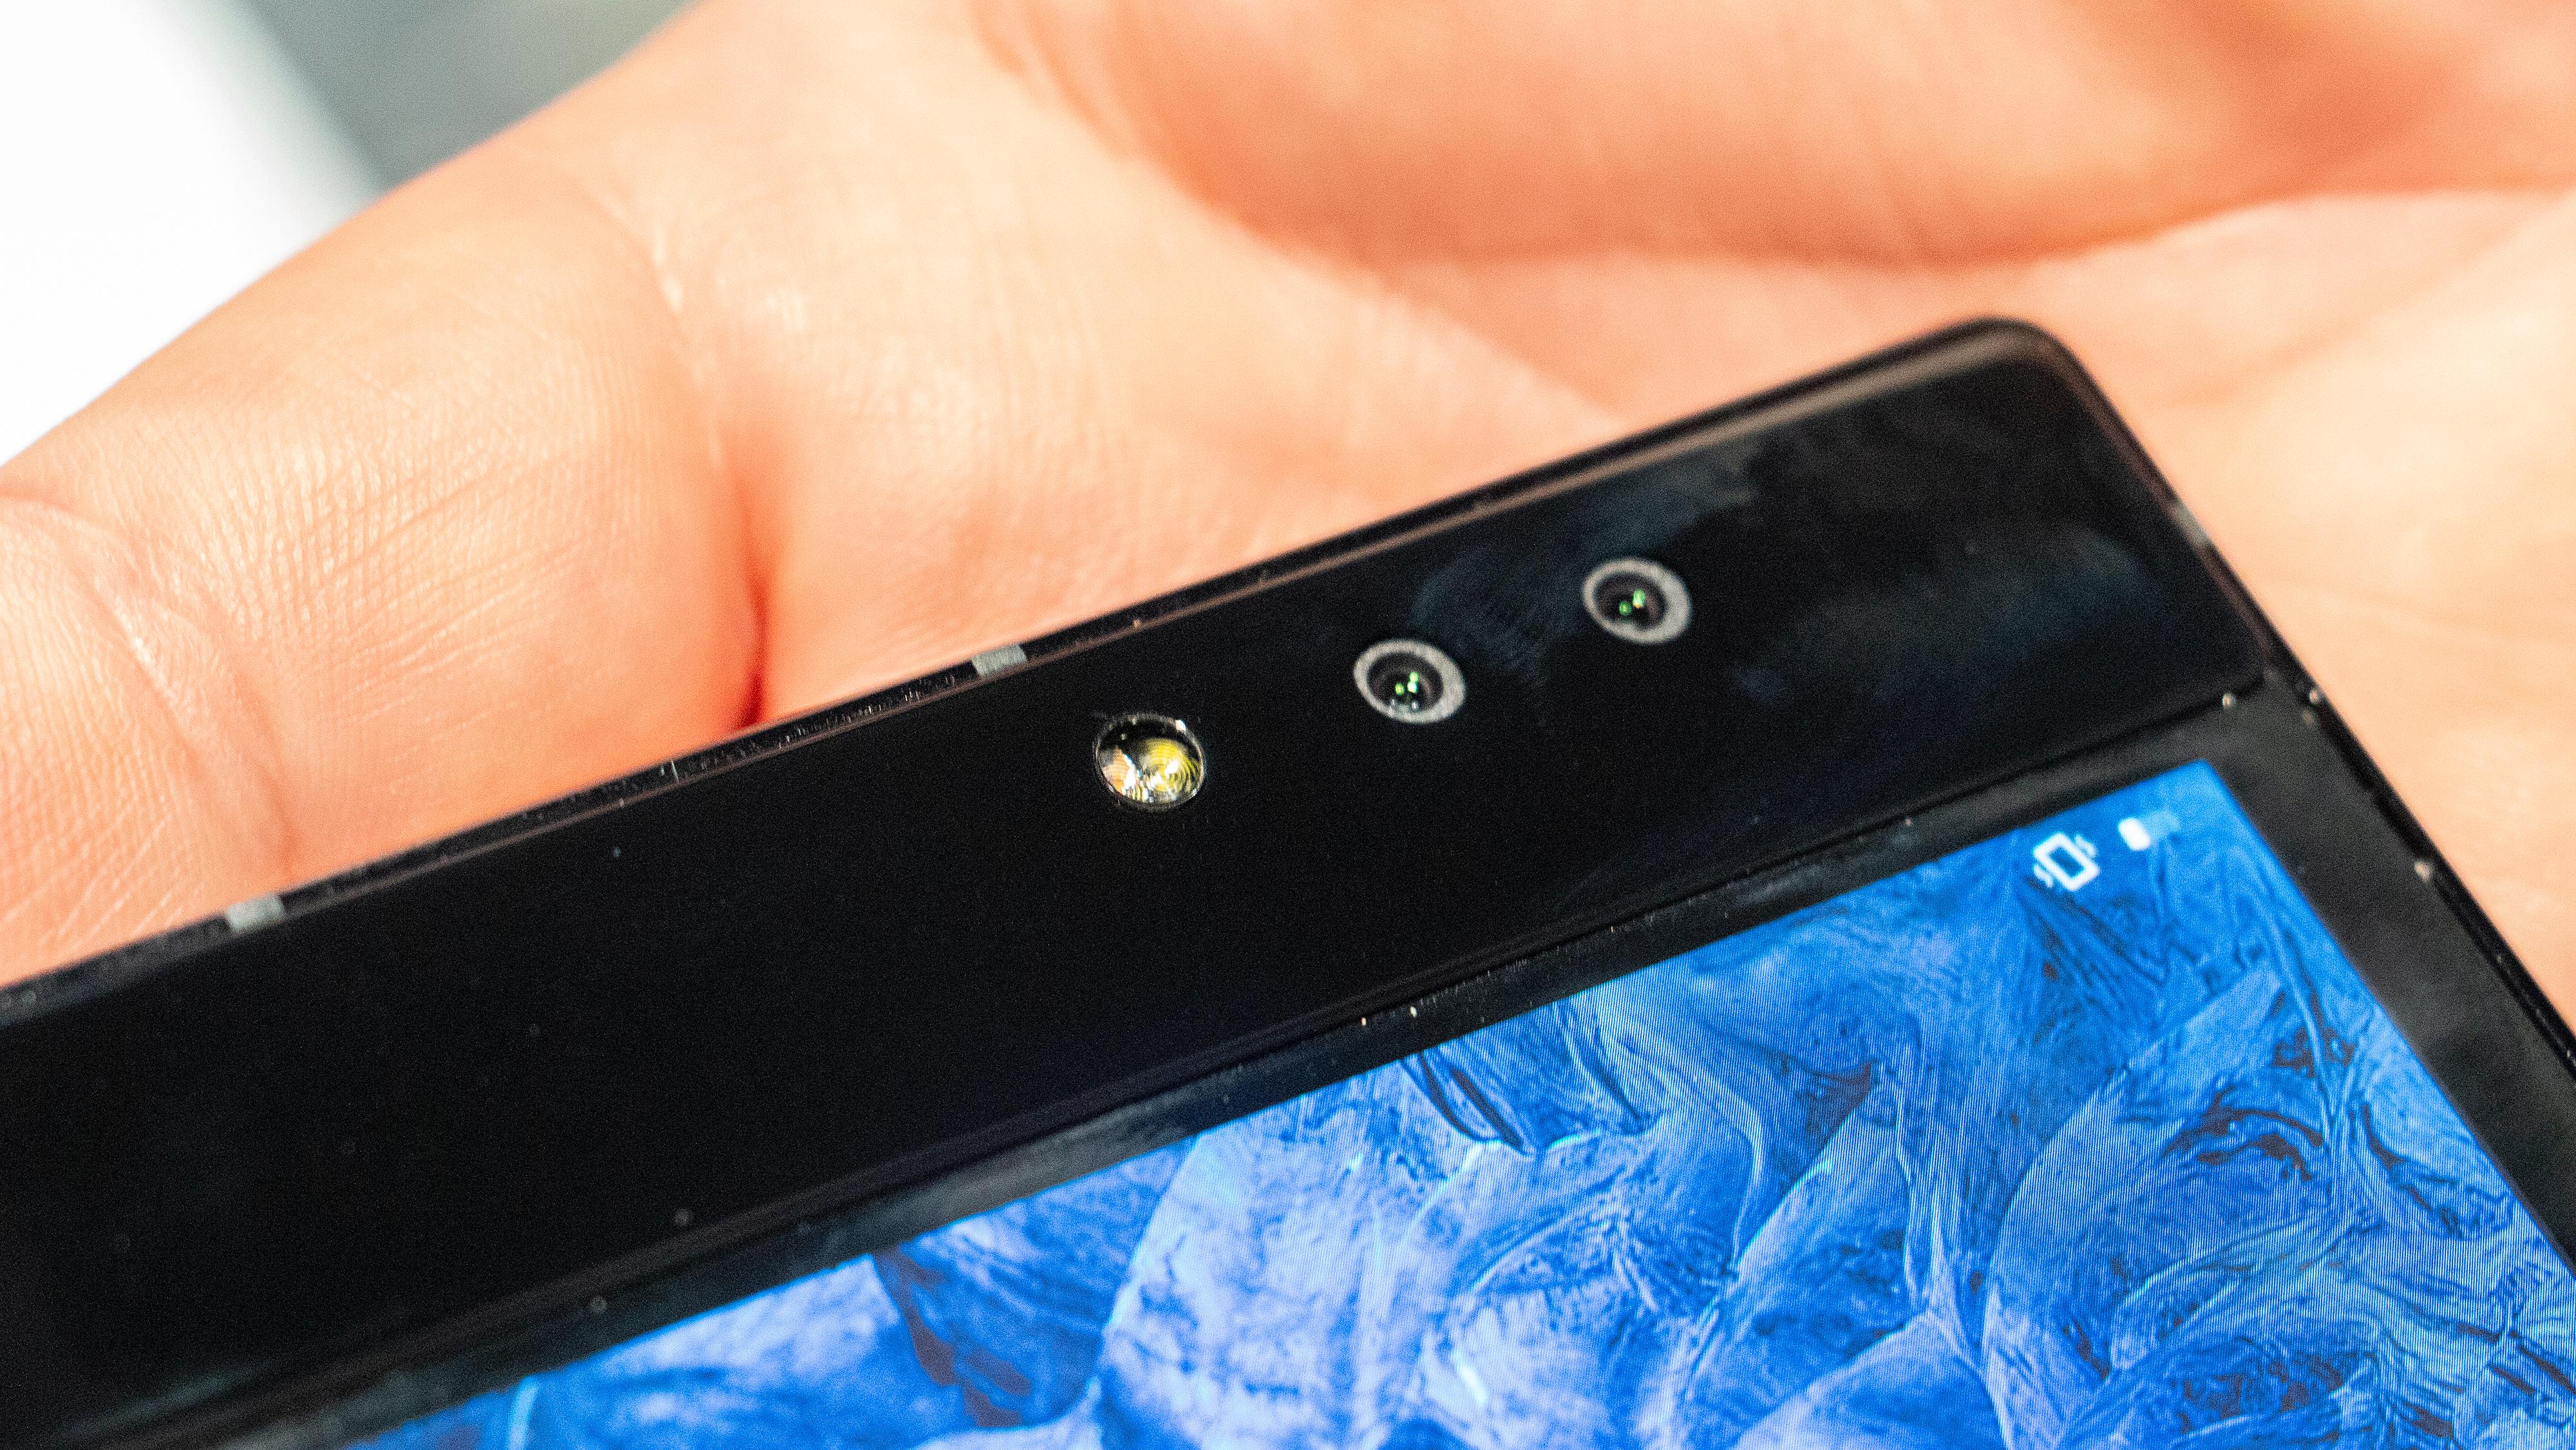 Front- og bakkameraer er en saga blott når telefonen blir bøyelig. FlexPai har to sensorer på henholdsvis 16 og 20 megapiksler.